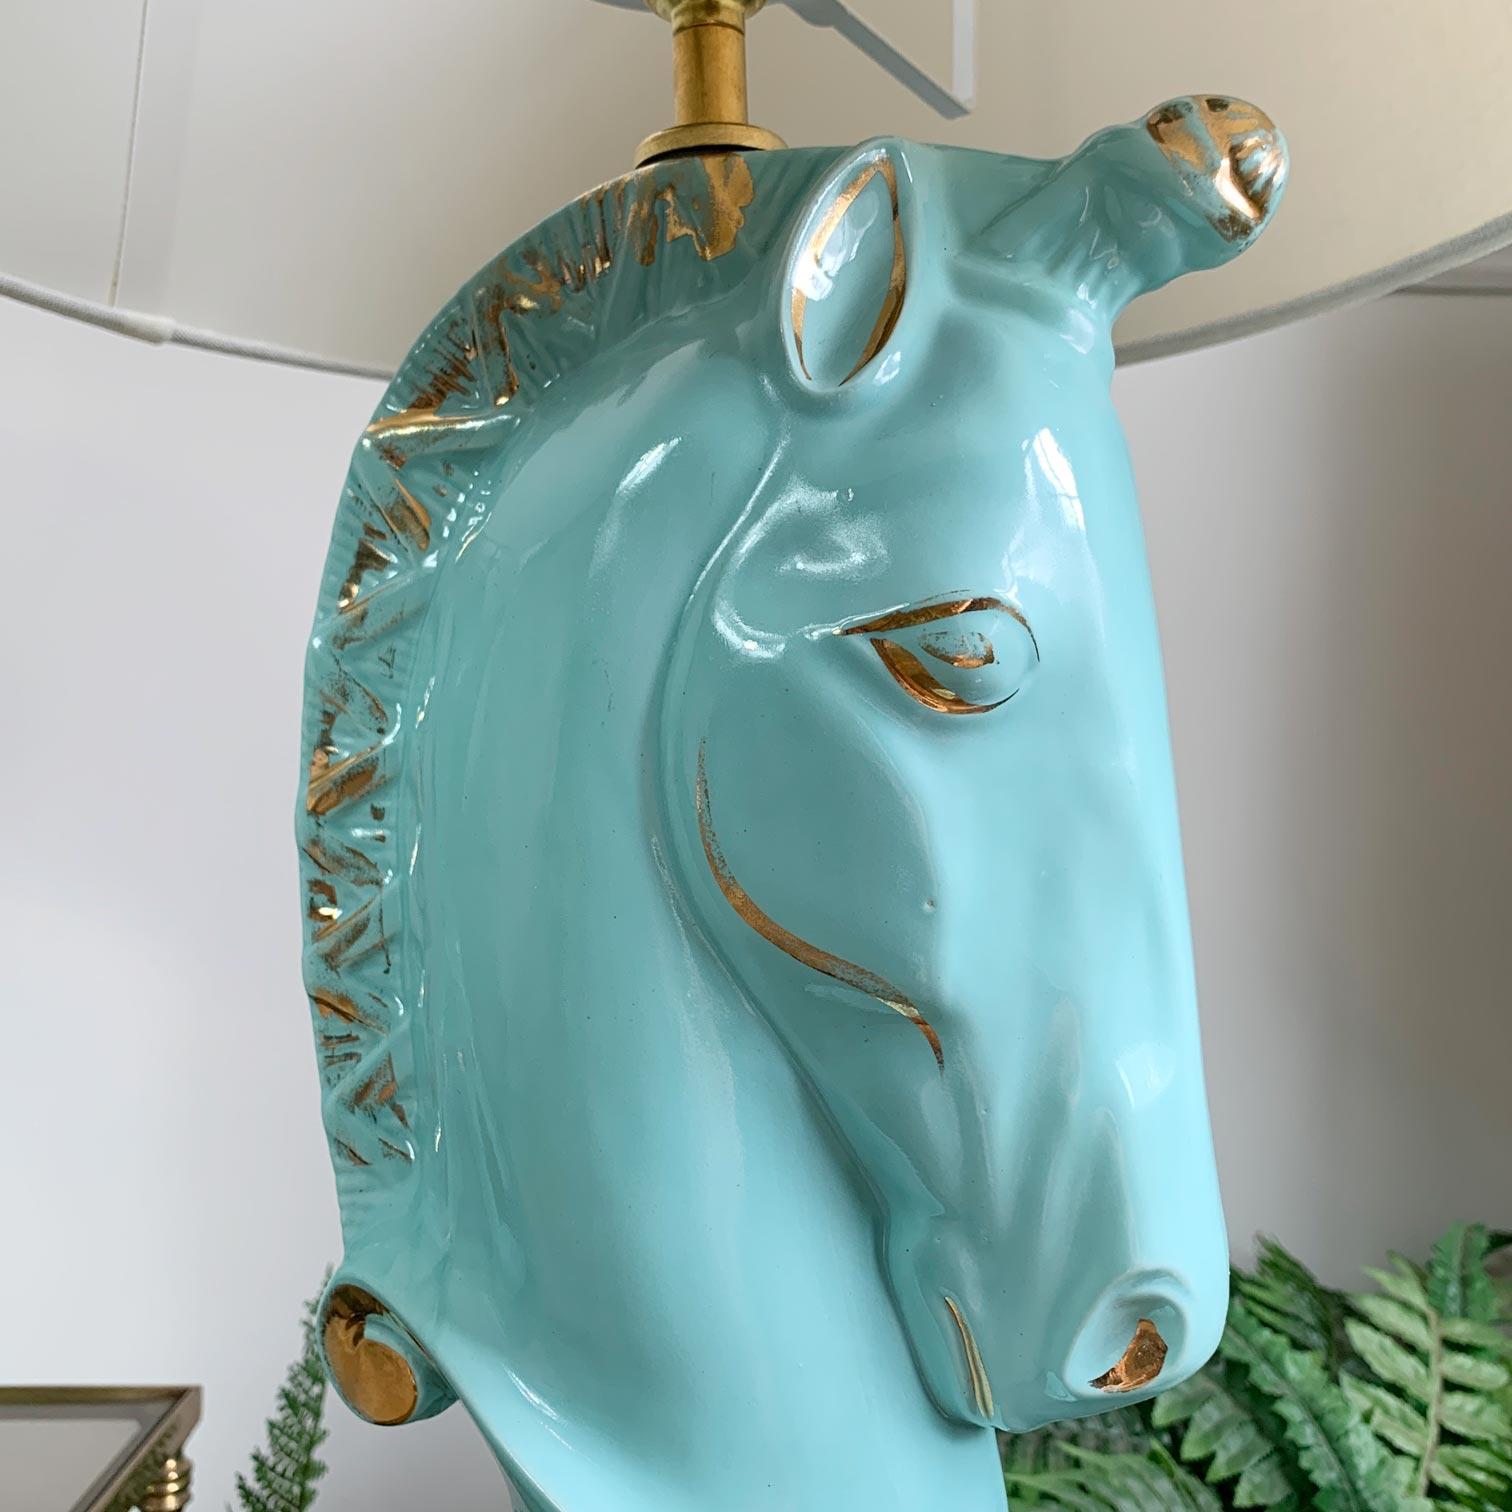 vintage unicorn lamp